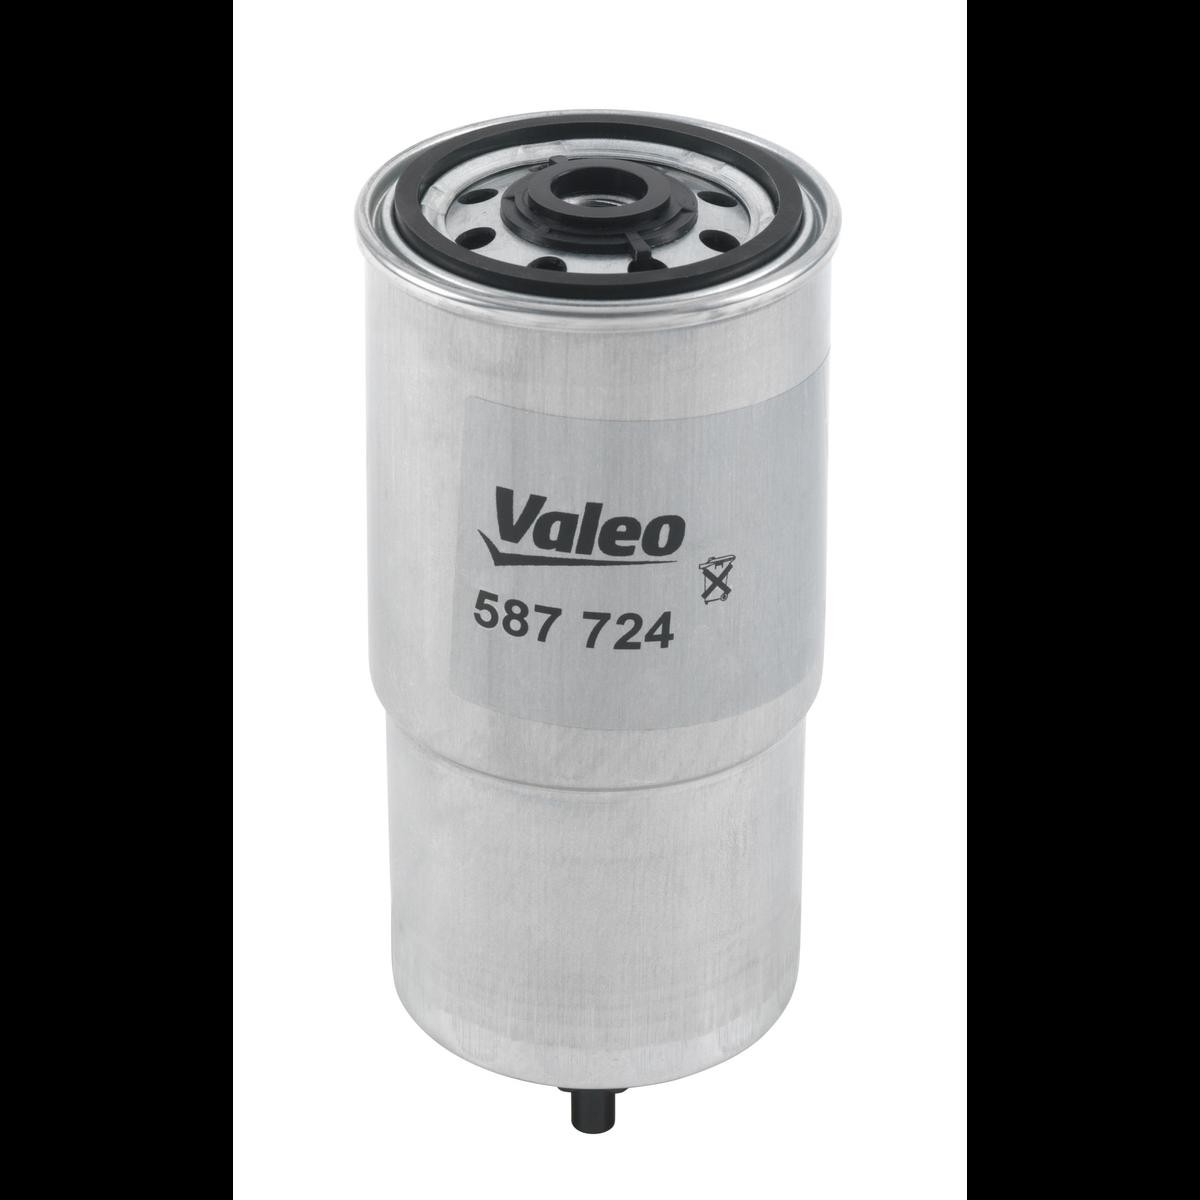 VALEO 587724 Fuel filter 16403 T9300